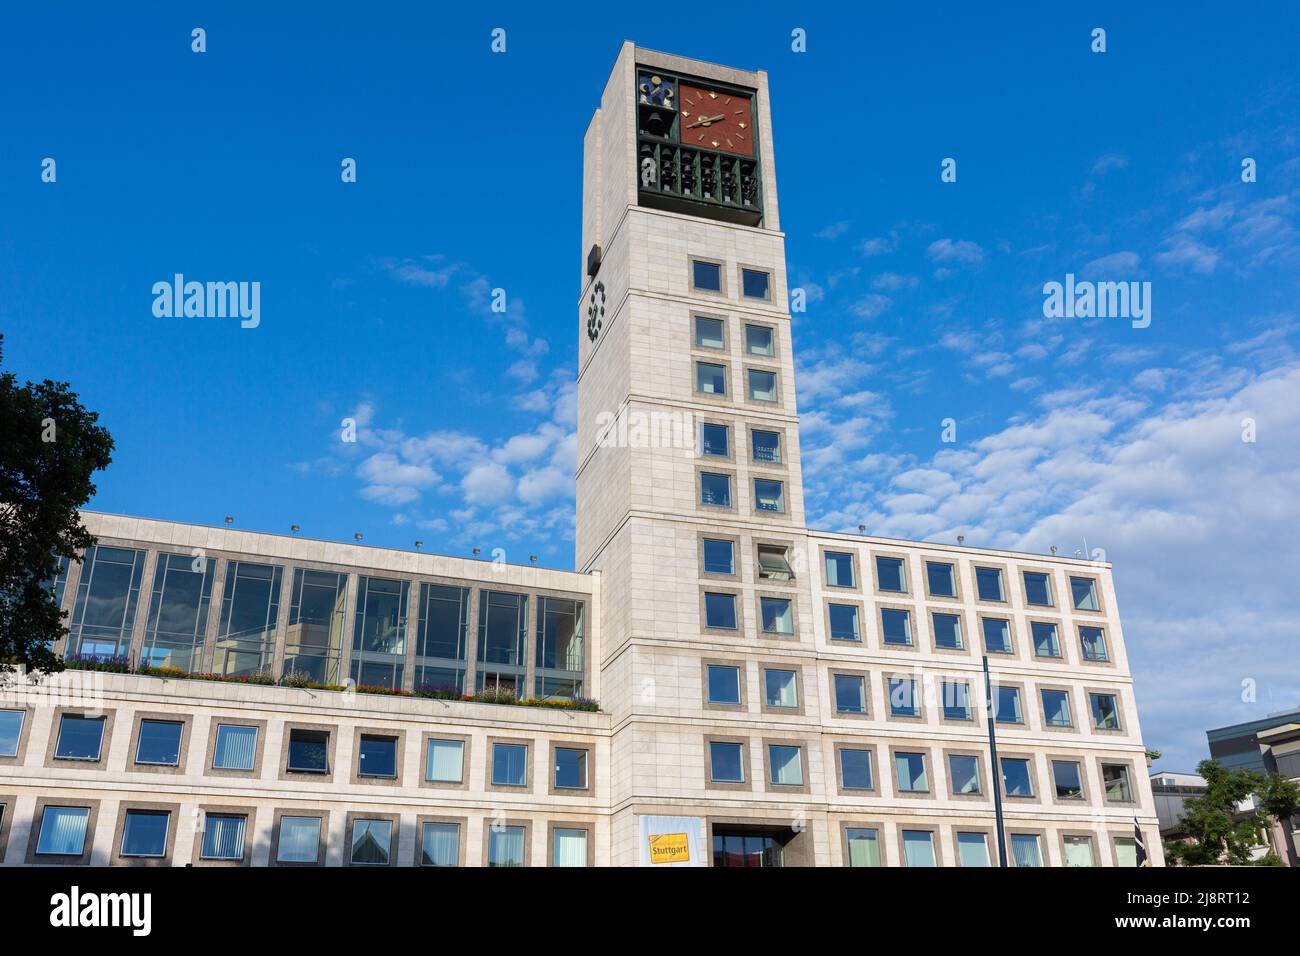 Stuttgart, Germany - Jul 29, 2021: City hall of Stuttgart (Rathaus). Stock Photo